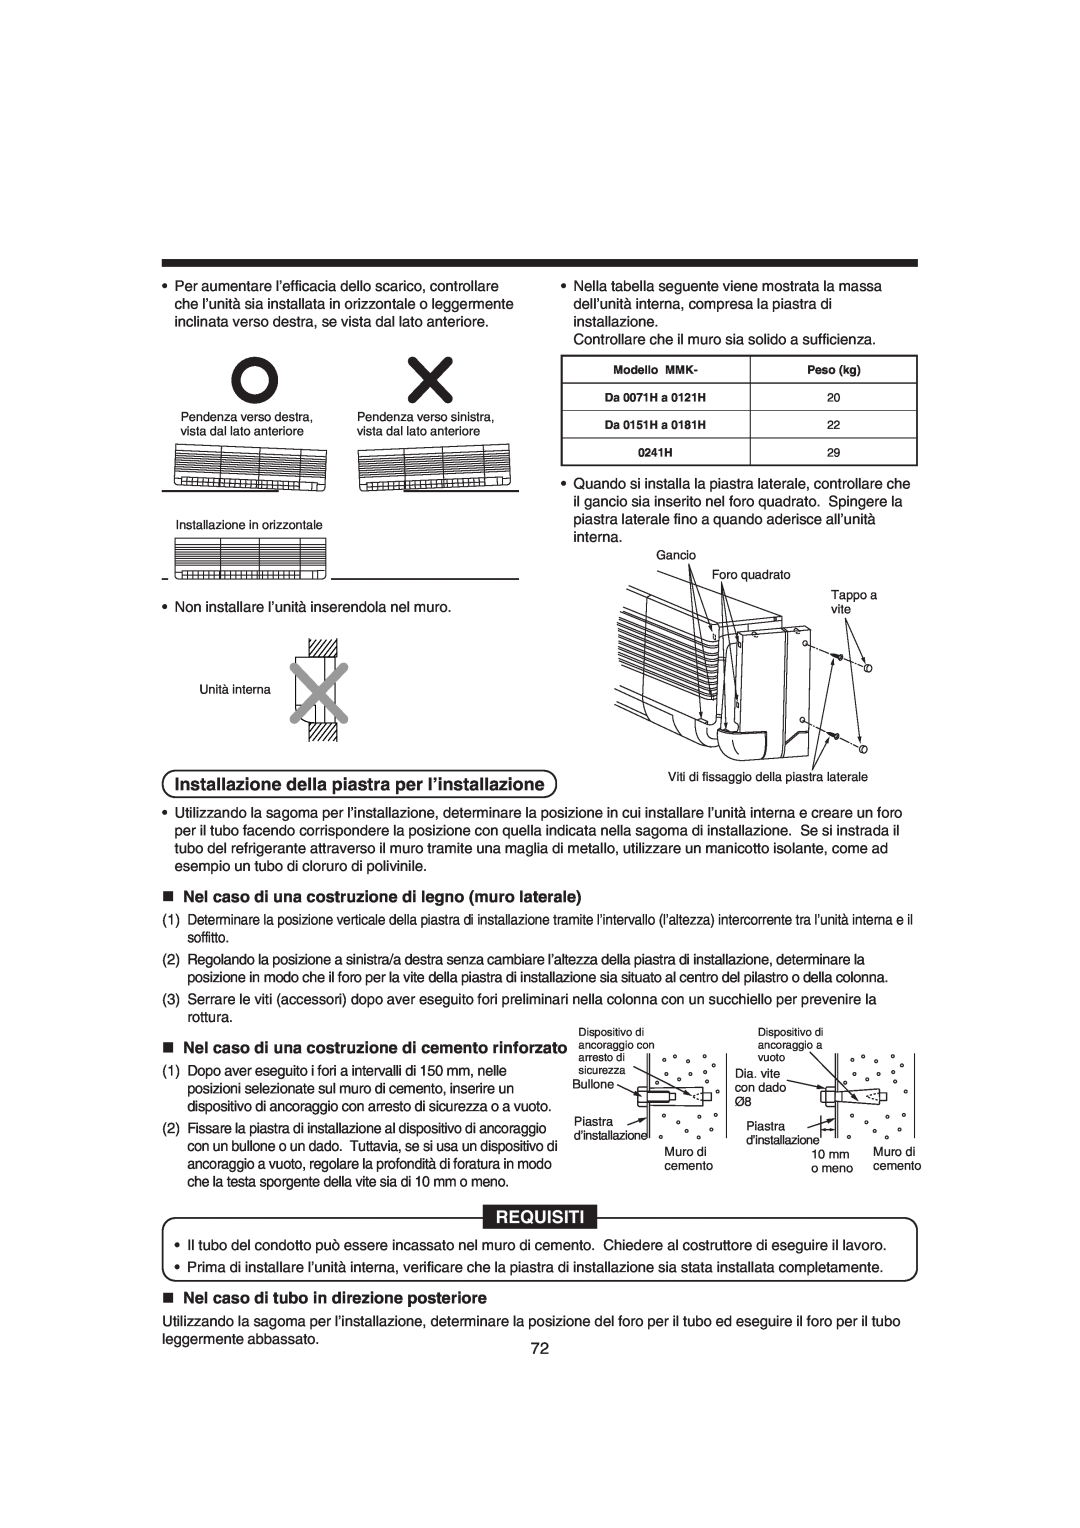 Pentax MMK-AP0121H Installazione della piastra per l’installazione, „Nel caso di tubo in direzione posteriore, Requisiti 